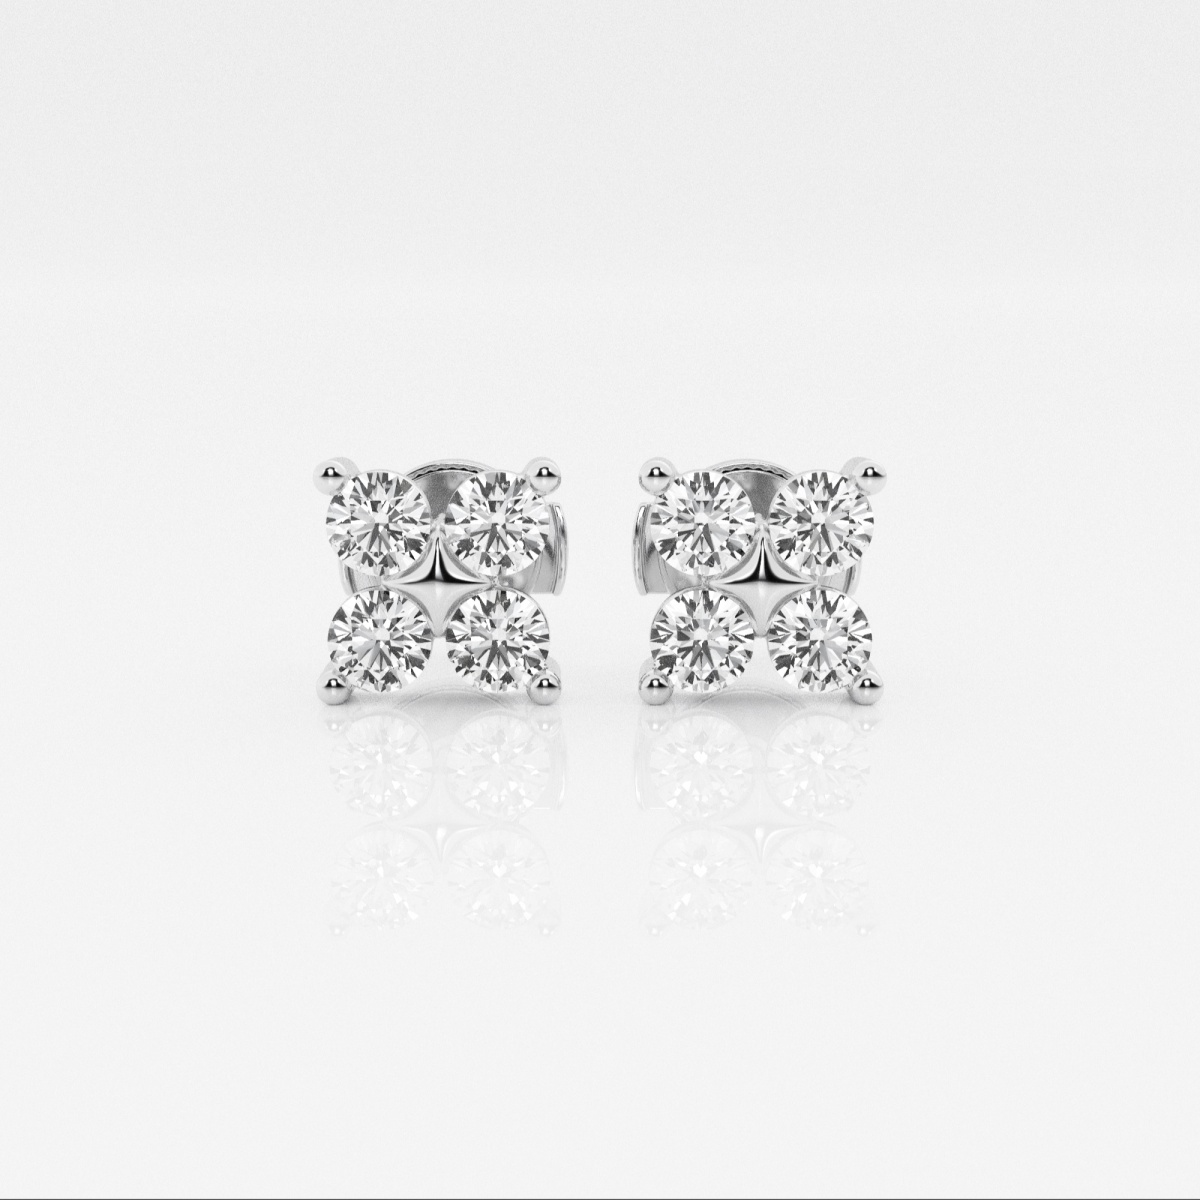 1 ctw Round Lab Grown Diamond Four Stone Fashion Earrings